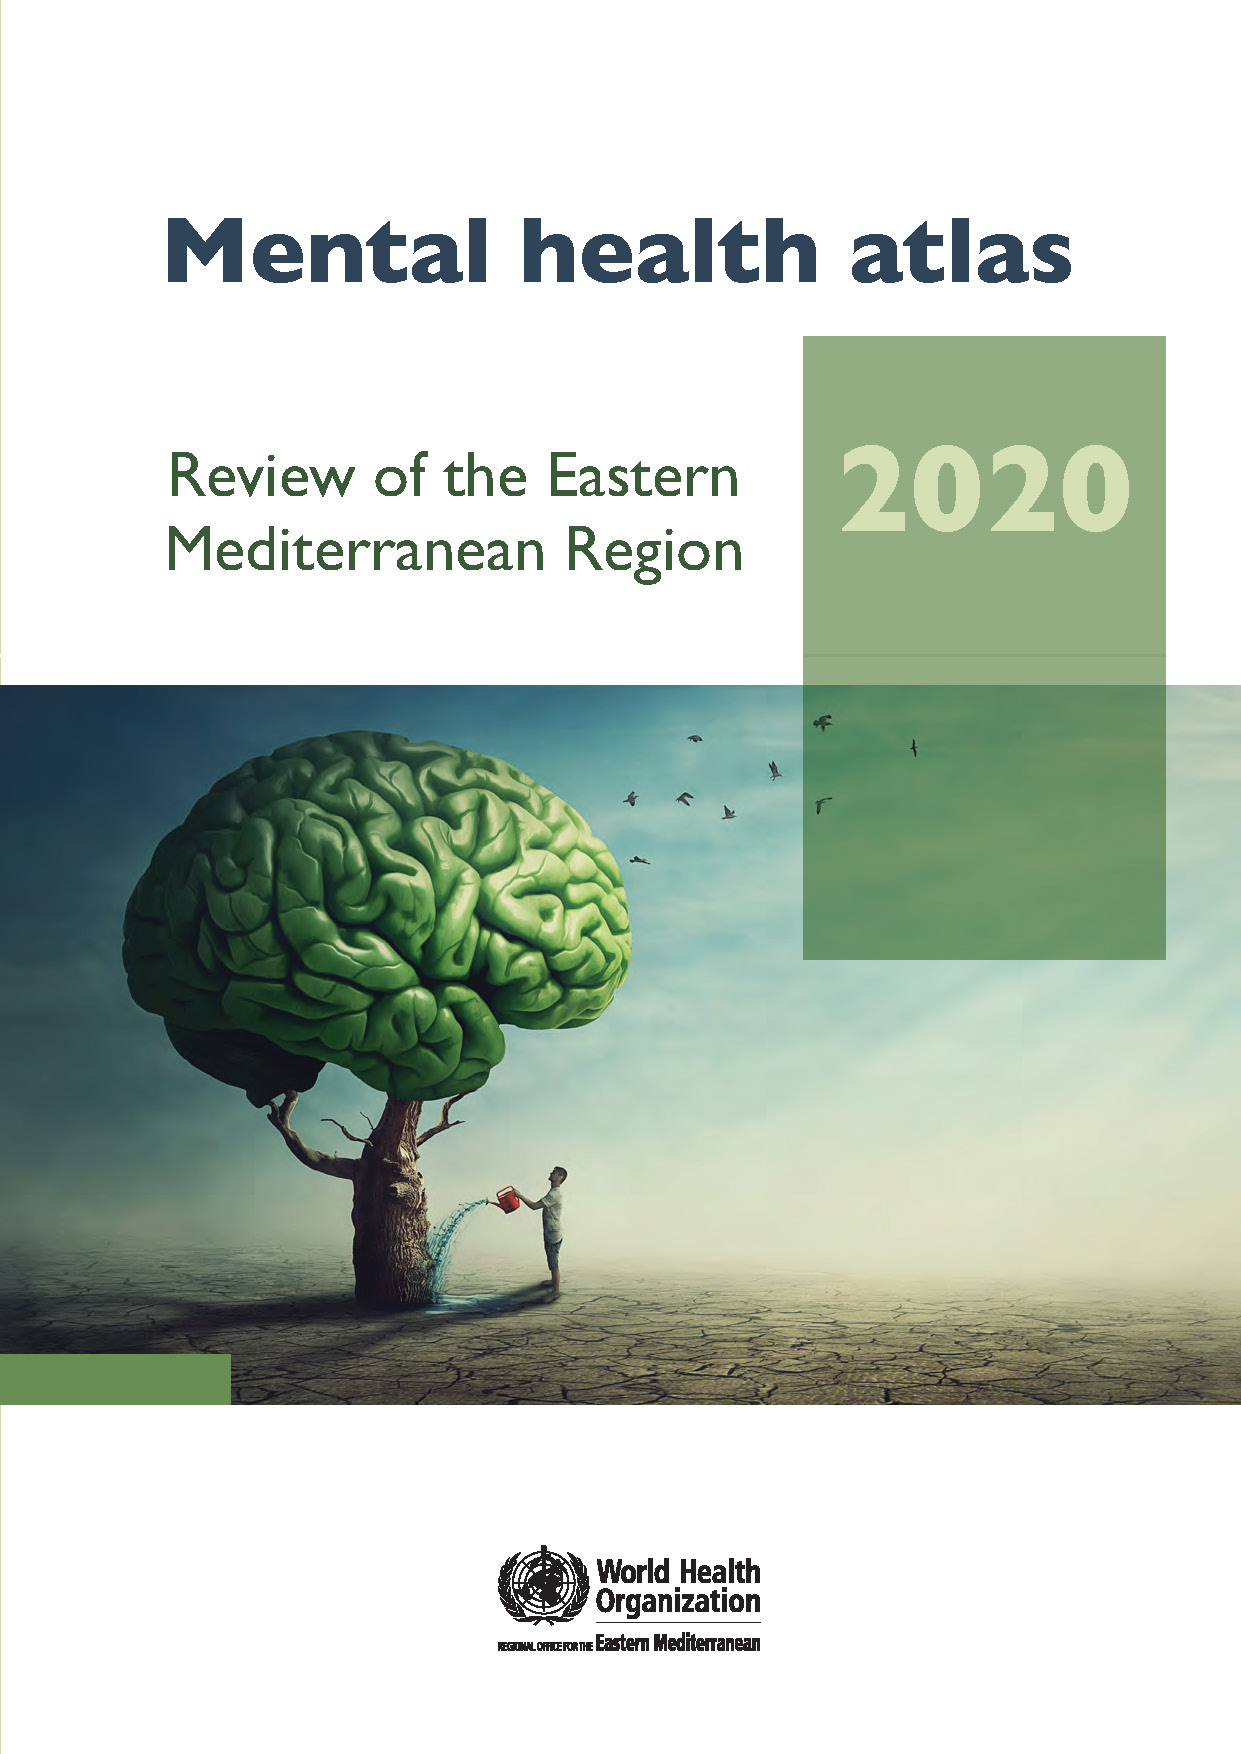 Mental health atlas 2020: review of the Eastern Mediterranean Region